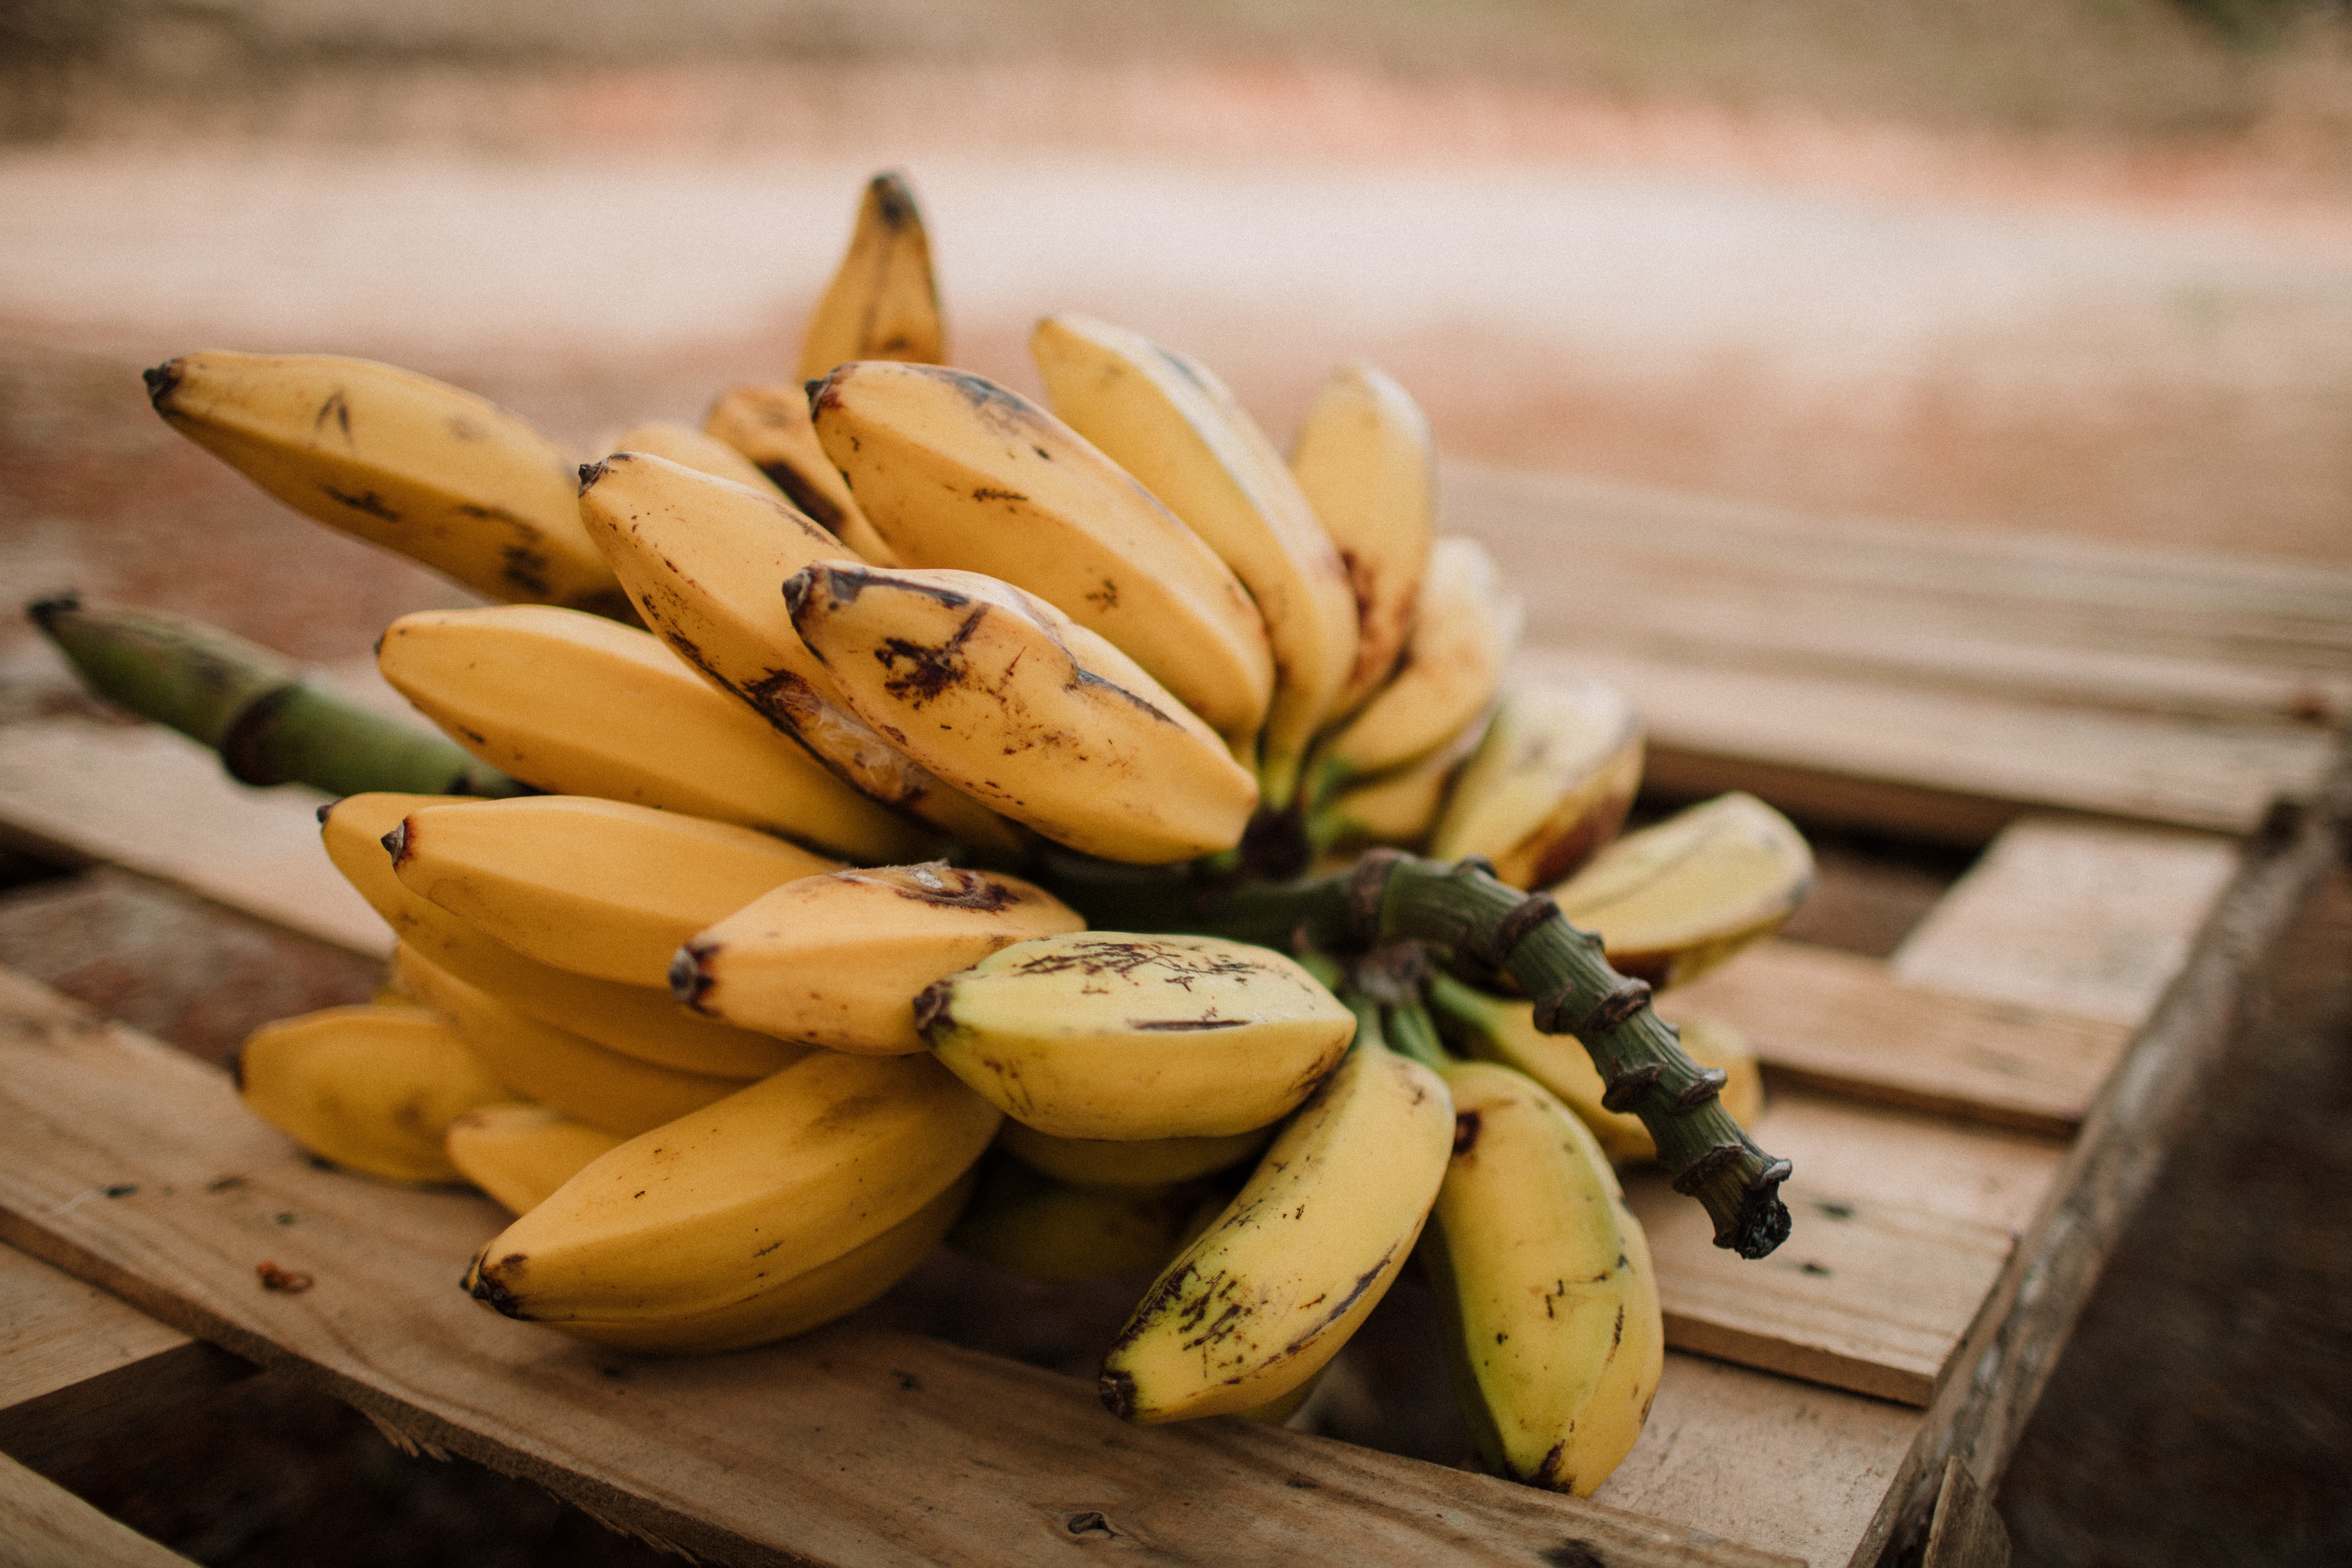 या स्वादिष्ट प्रकारांमध्ये वेलची किंवा येलक्की केळीचाही समावेश होतो. ही लहान आकाराची केळी अतिशय गोड आणि पौष्टिक गुणधर्मांनी परिपूर्ण आहेत.